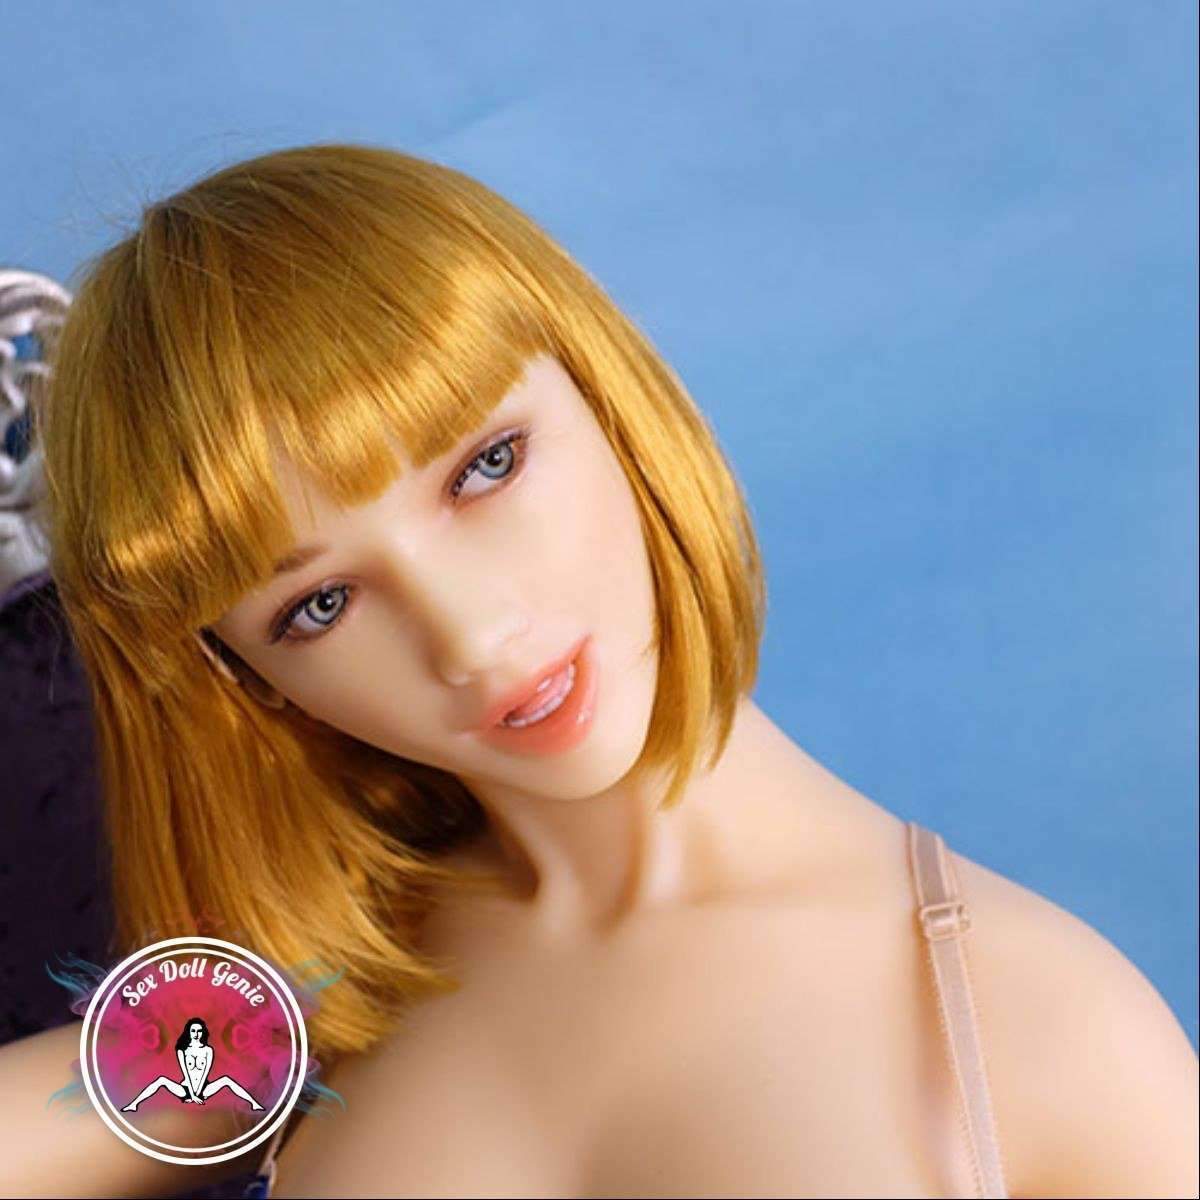 DS Doll - 158Plus - Penny Head - Muñeca de silicona con copa D tipo 1-15